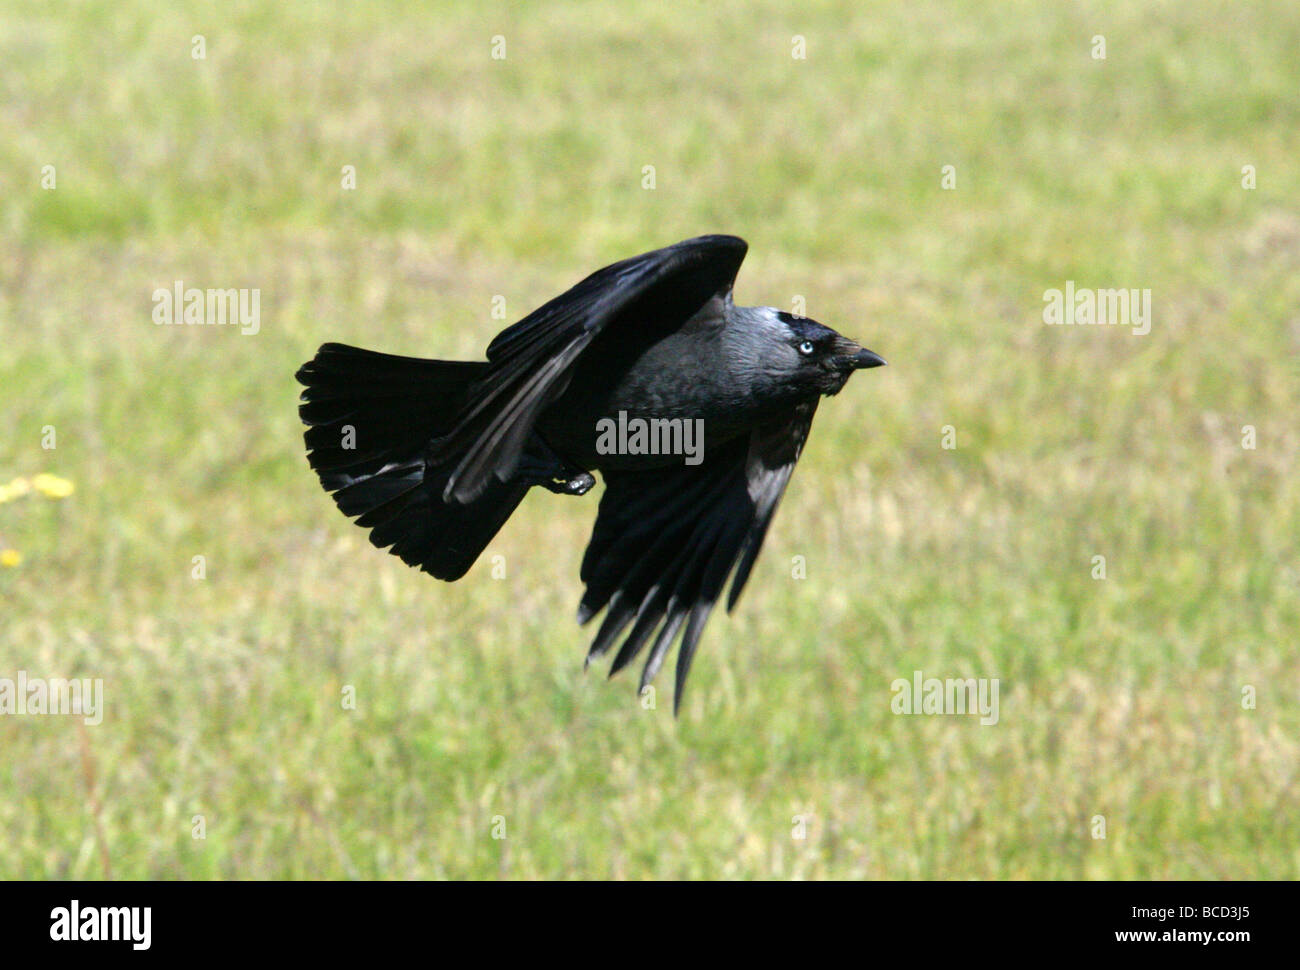 Jackdaw, Corvus monedula, Corvidae. Stock Photo